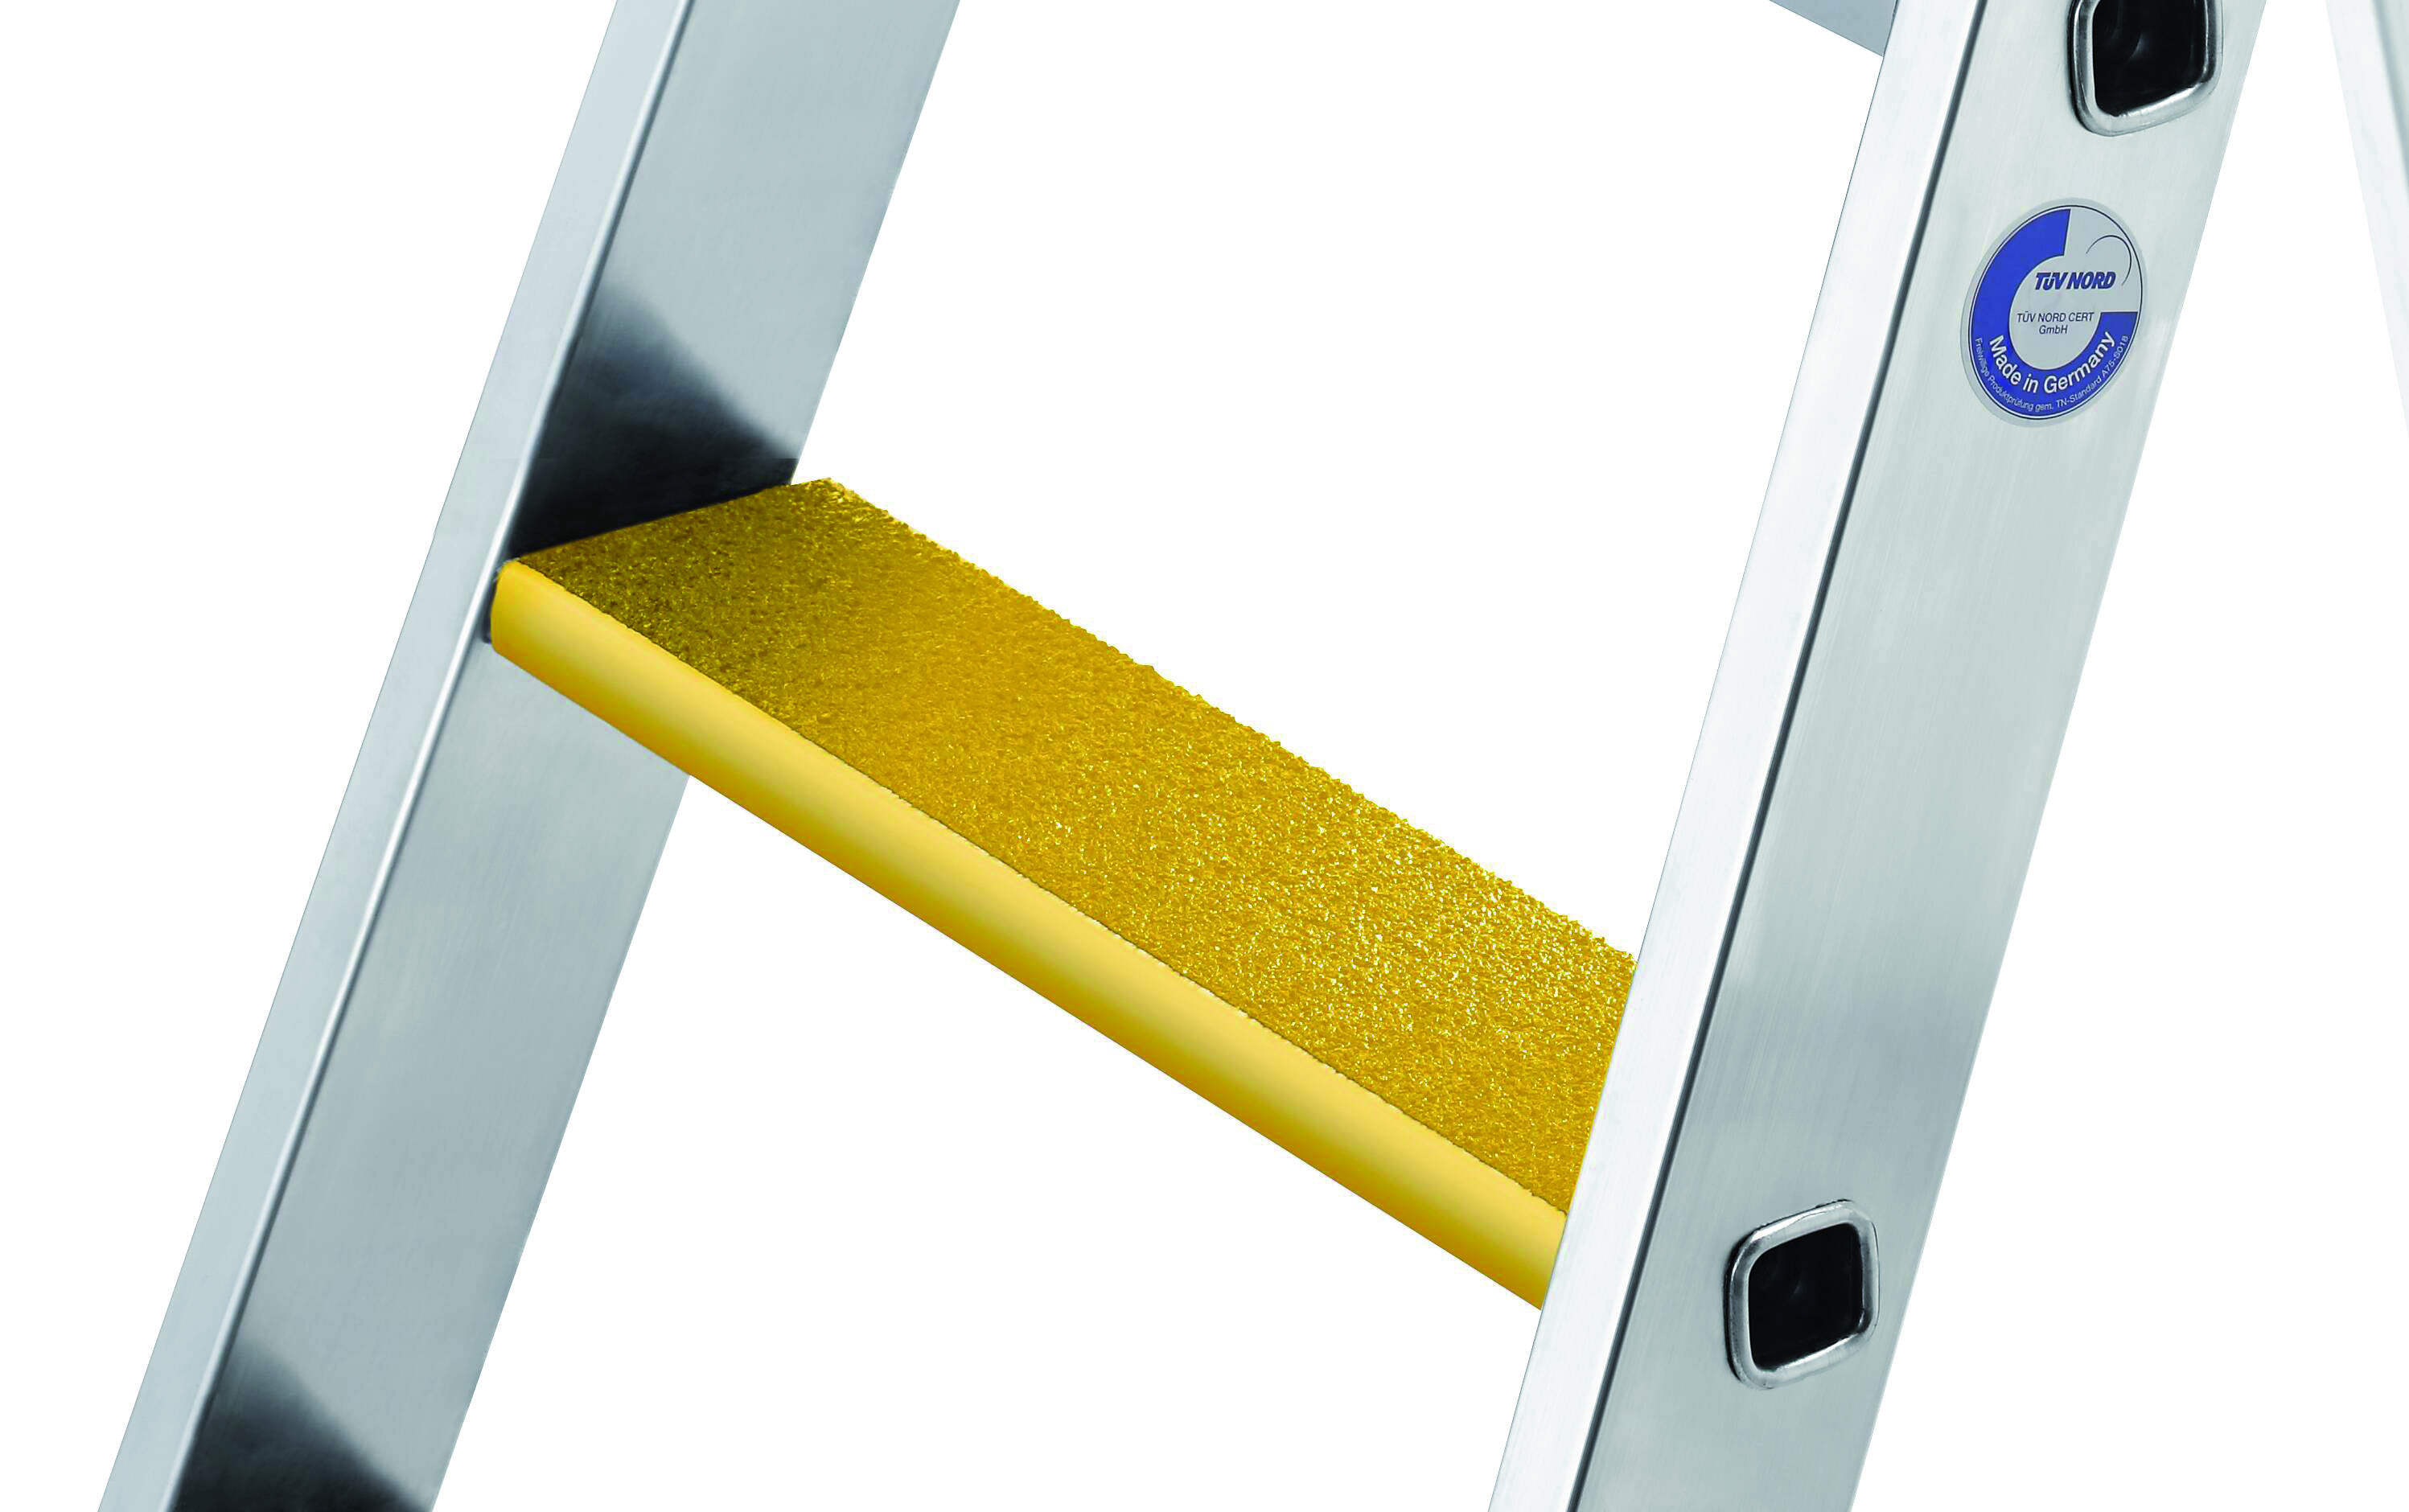 Nachrüstsatz Trittauflage clip-step R 13 gelb, 368 mm